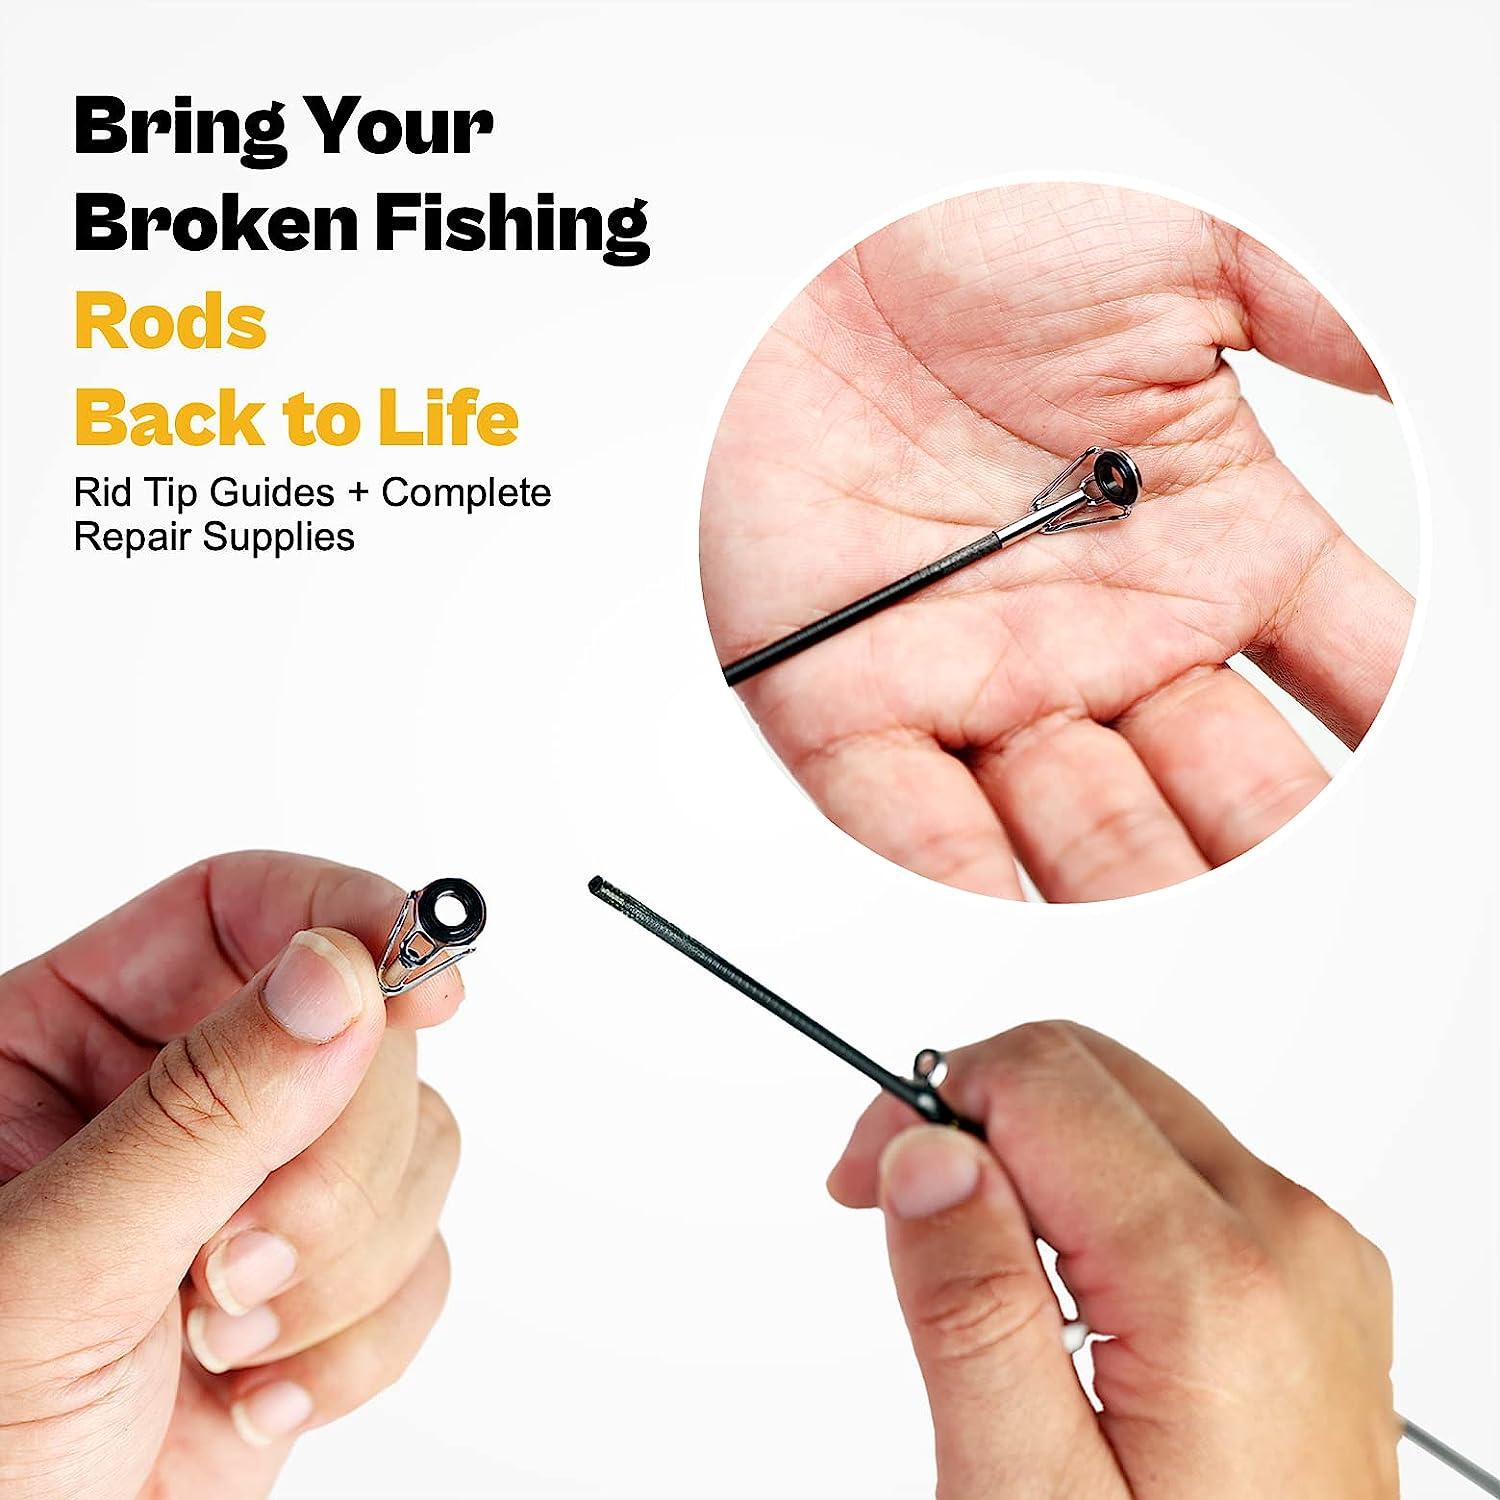 Buy OJY&DOIIIY Fishing Rod Repair Kit,Rod Building Kit and